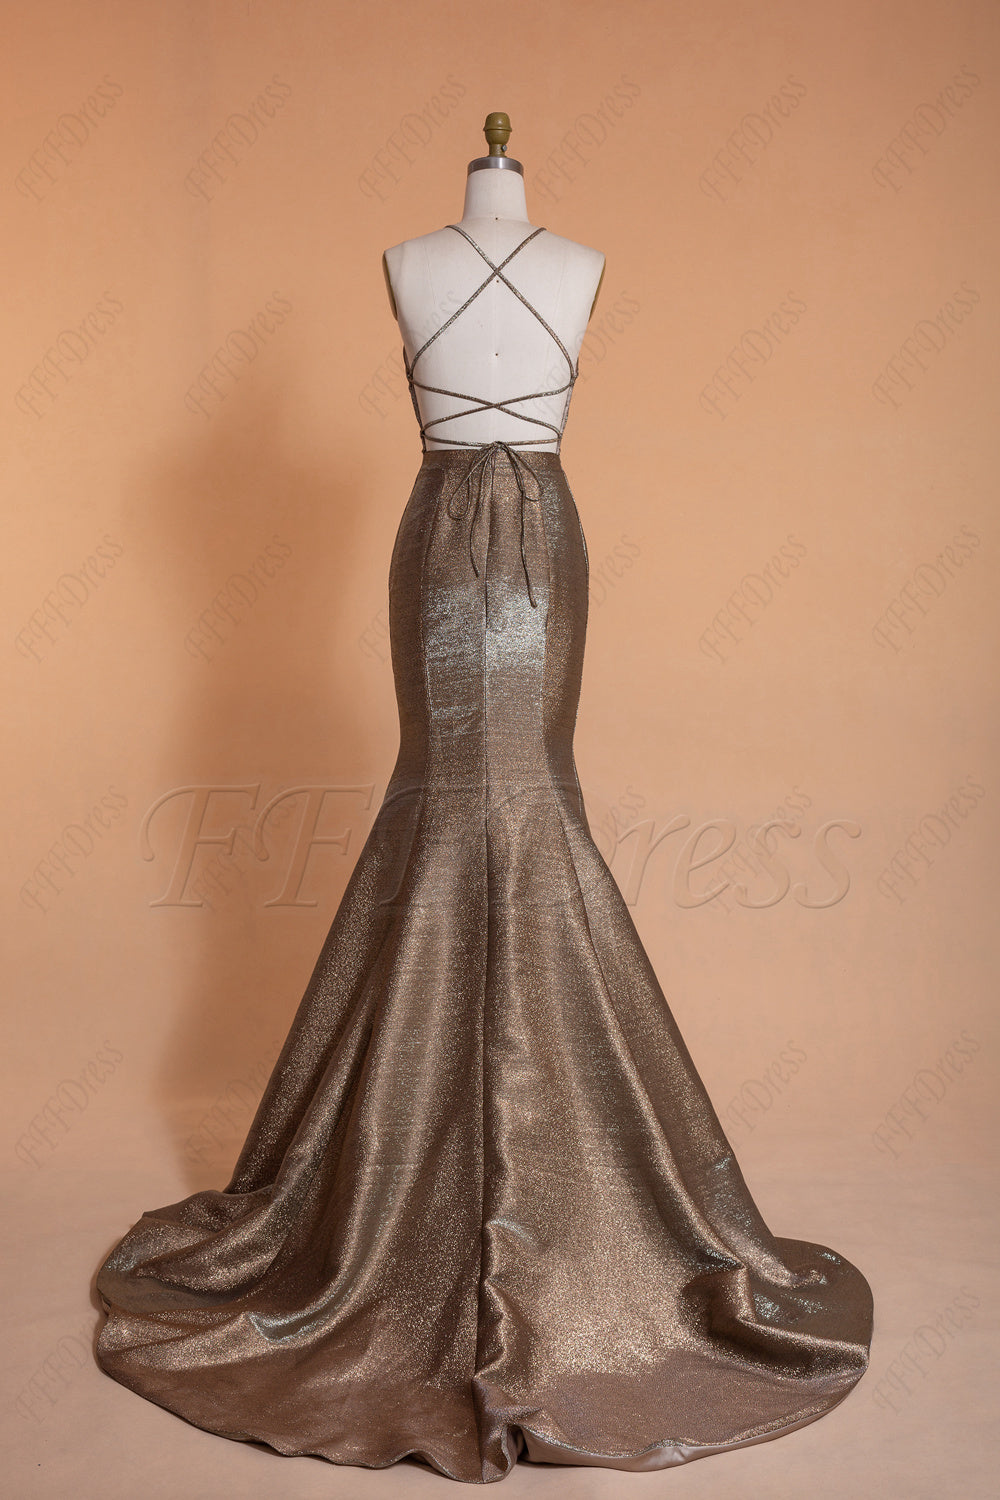 Halter Glitter Metallic Backless Prom Dresses Long